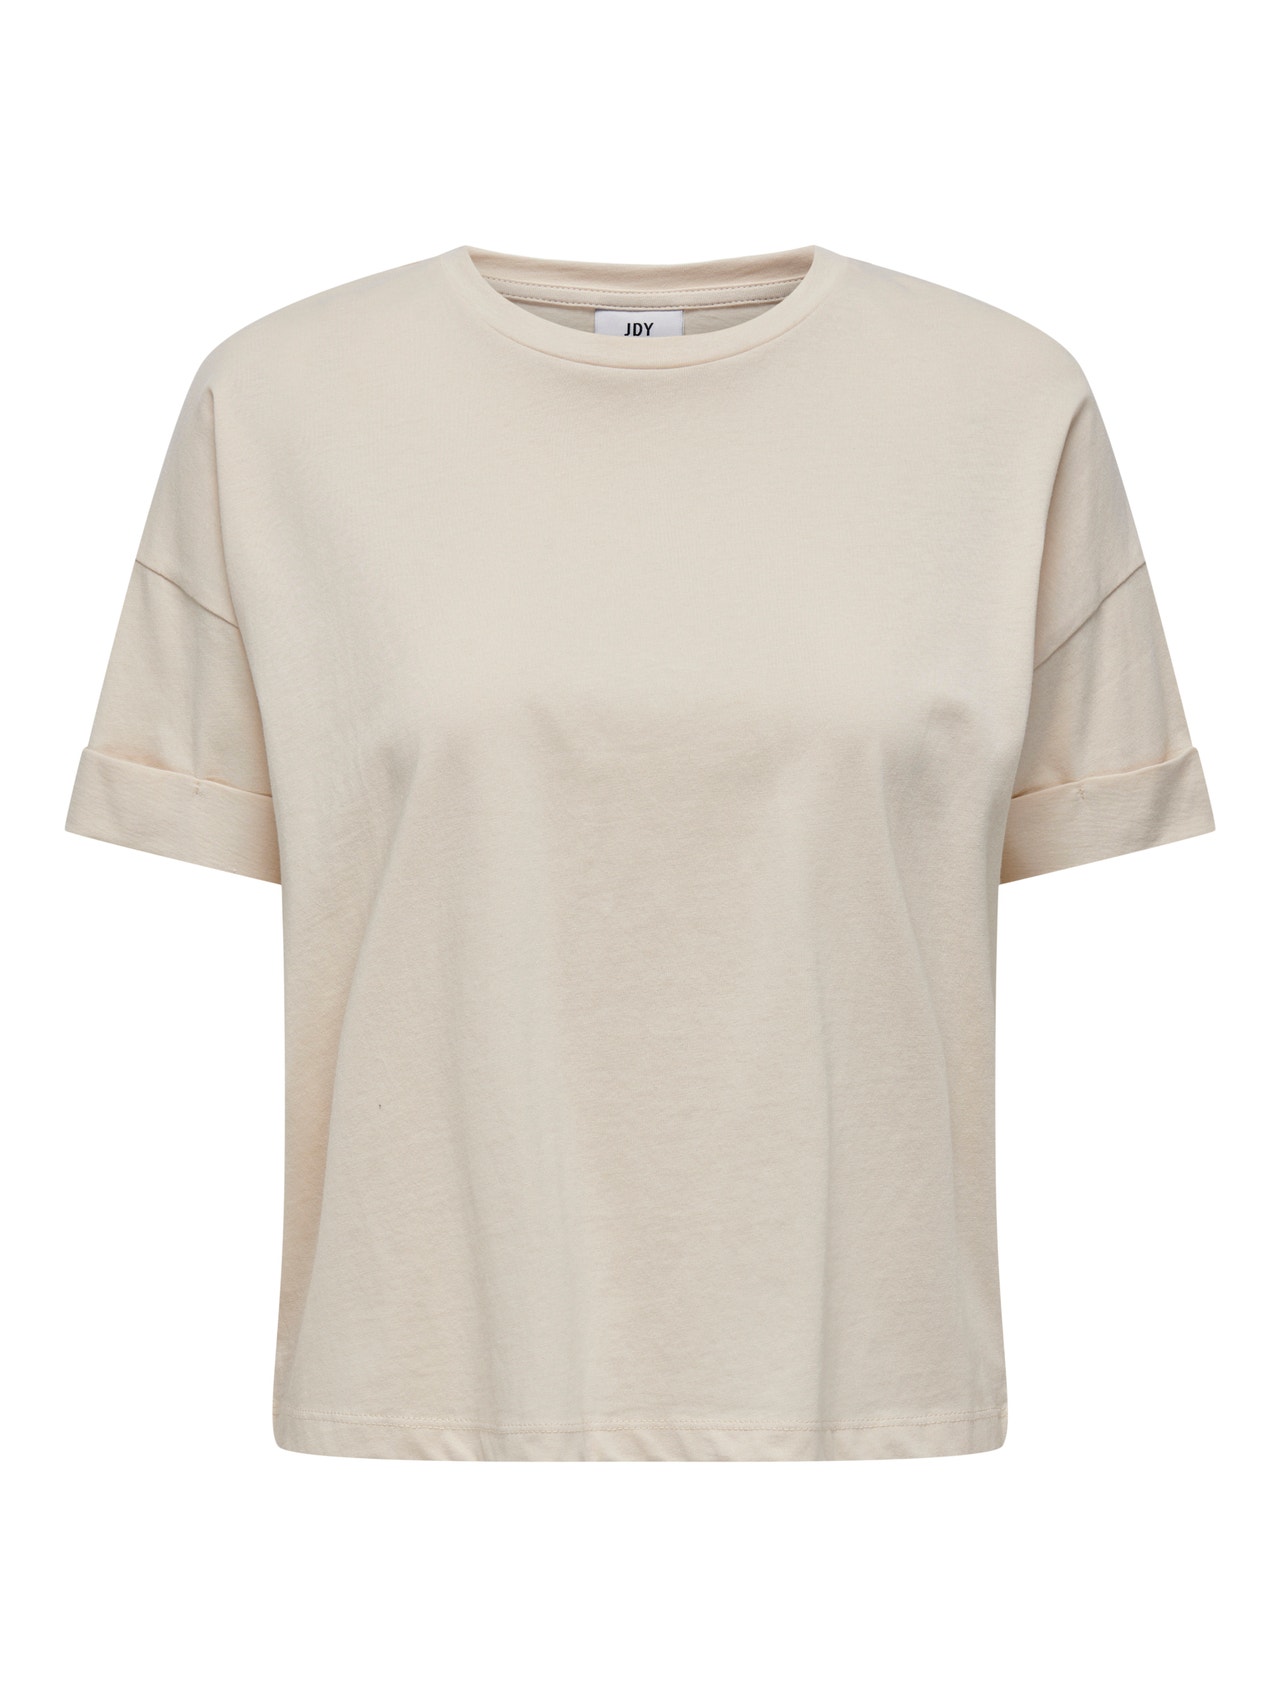 ONLY Normal geschnitten Rundhals T-Shirt -Sandshell - 15295543